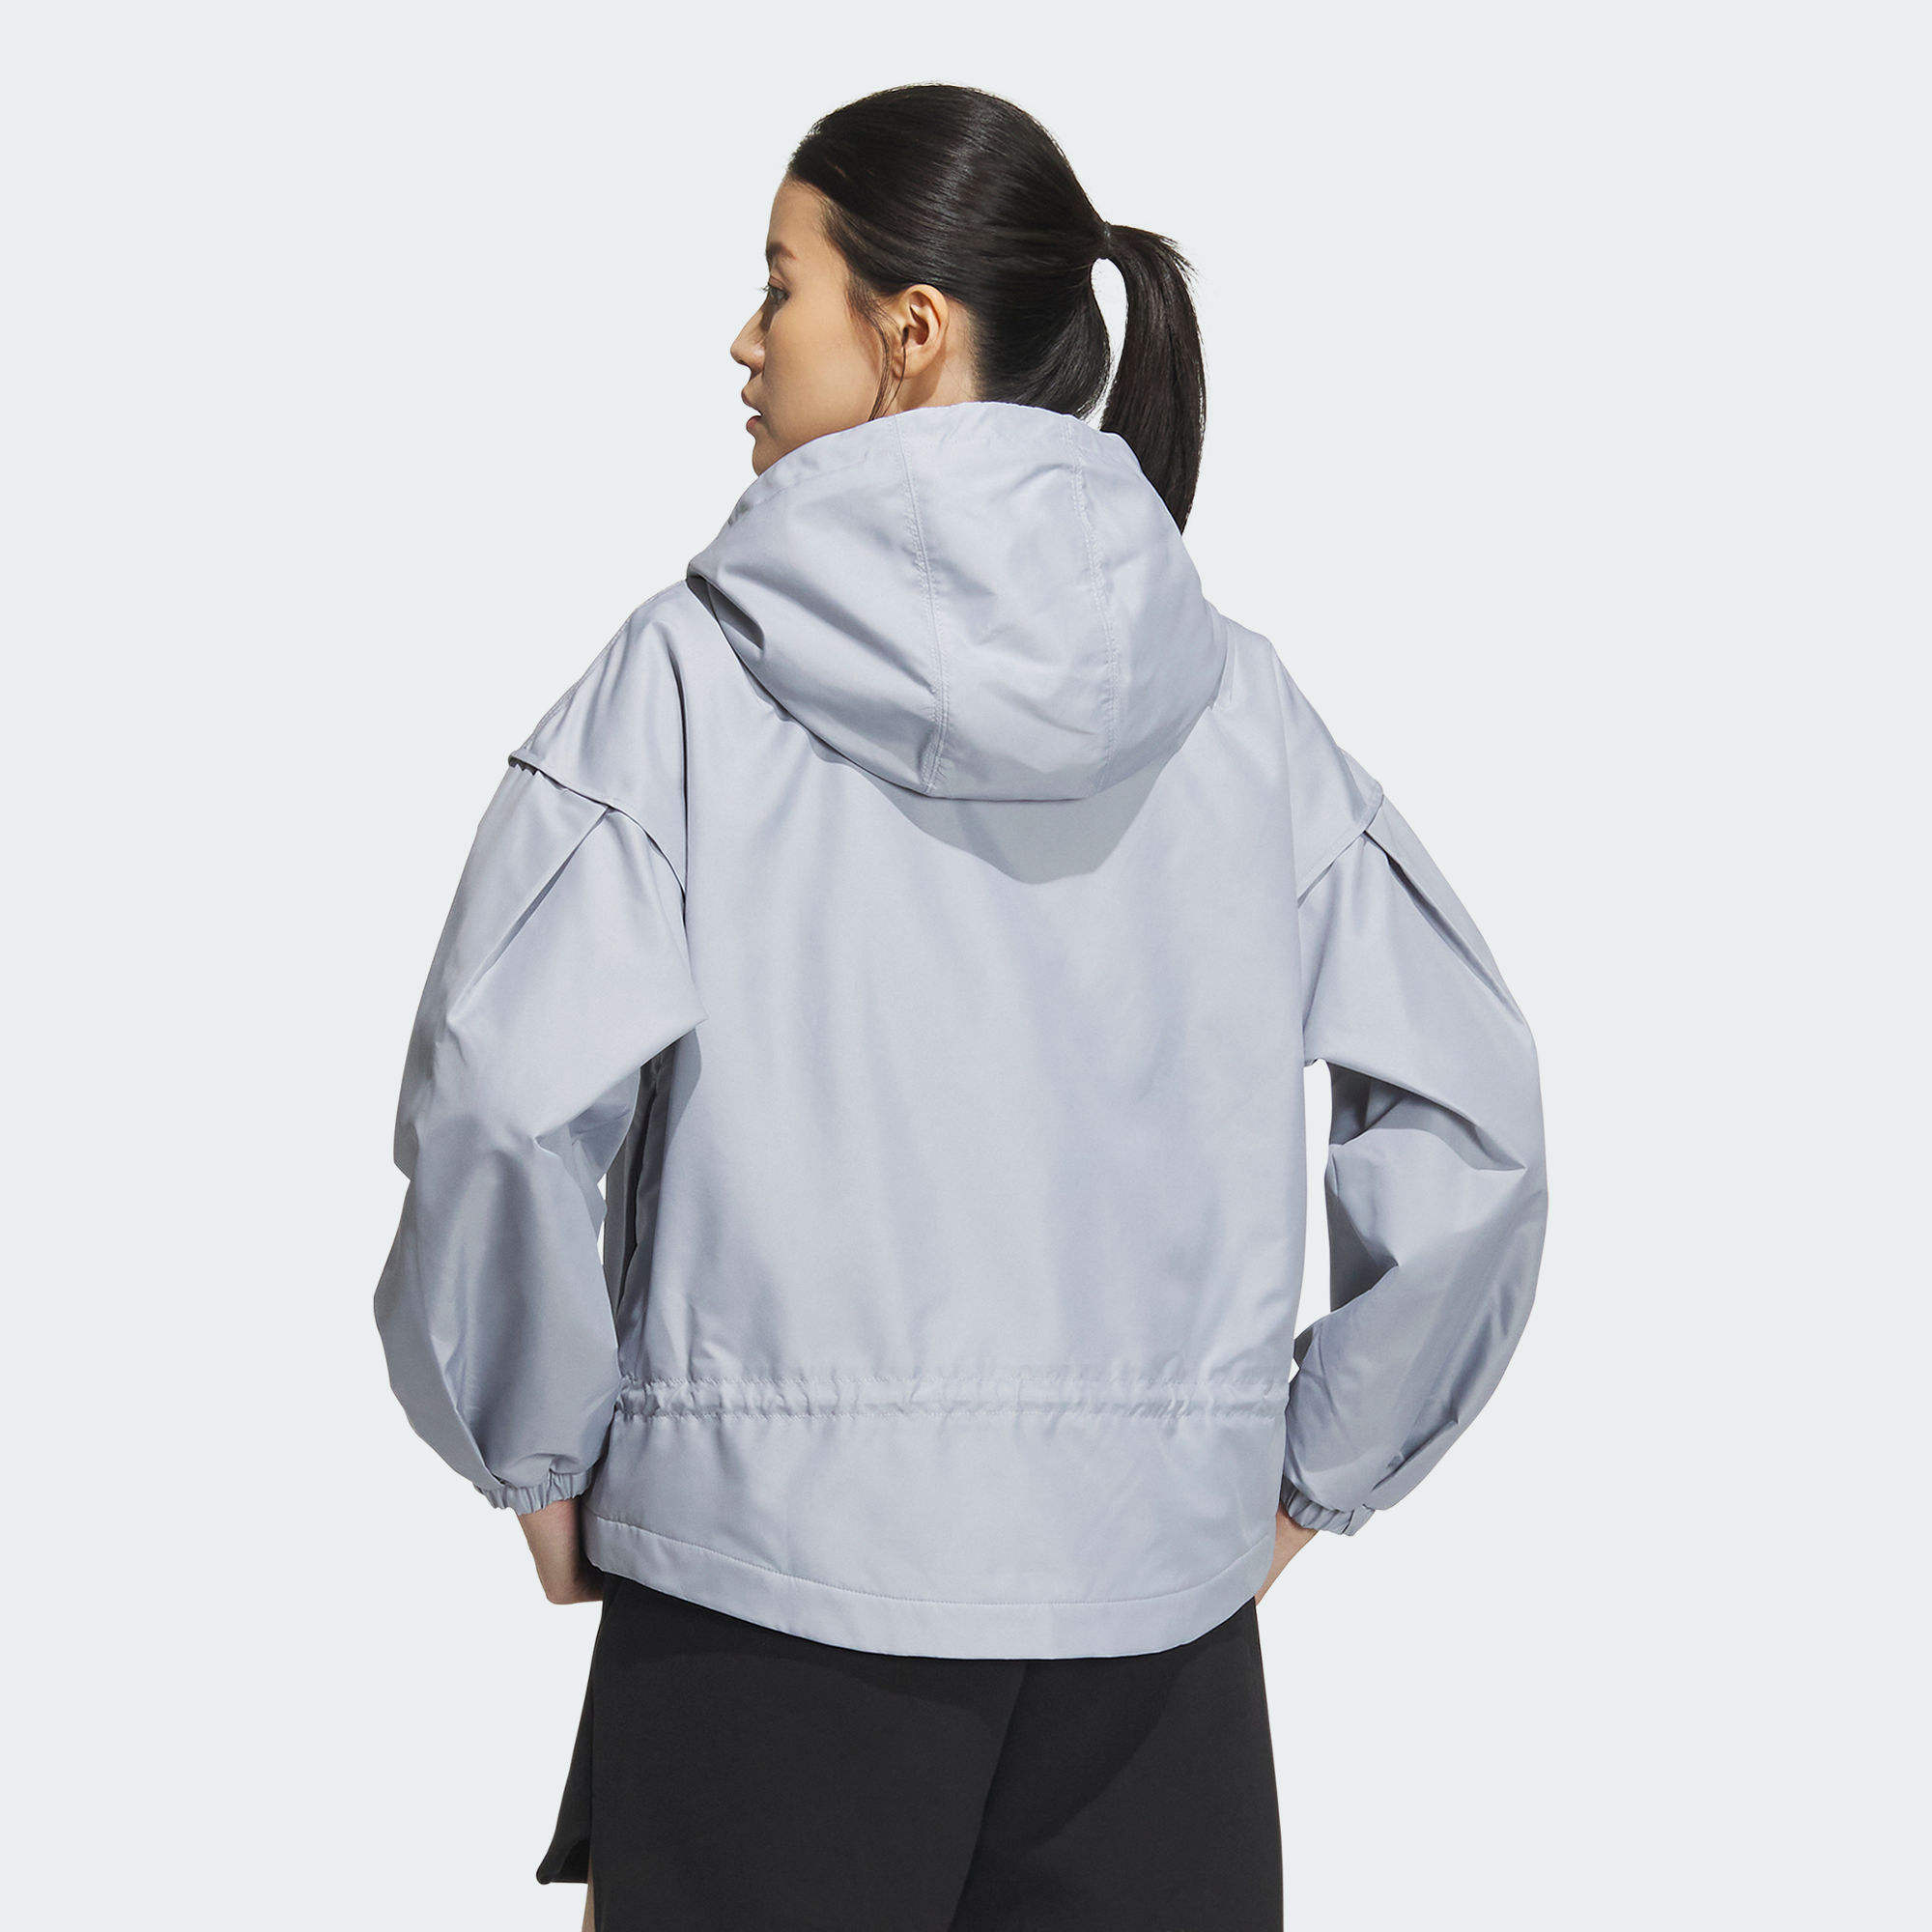 外套- 灰色| 女子| adidas(愛迪達)香港官方網上商店